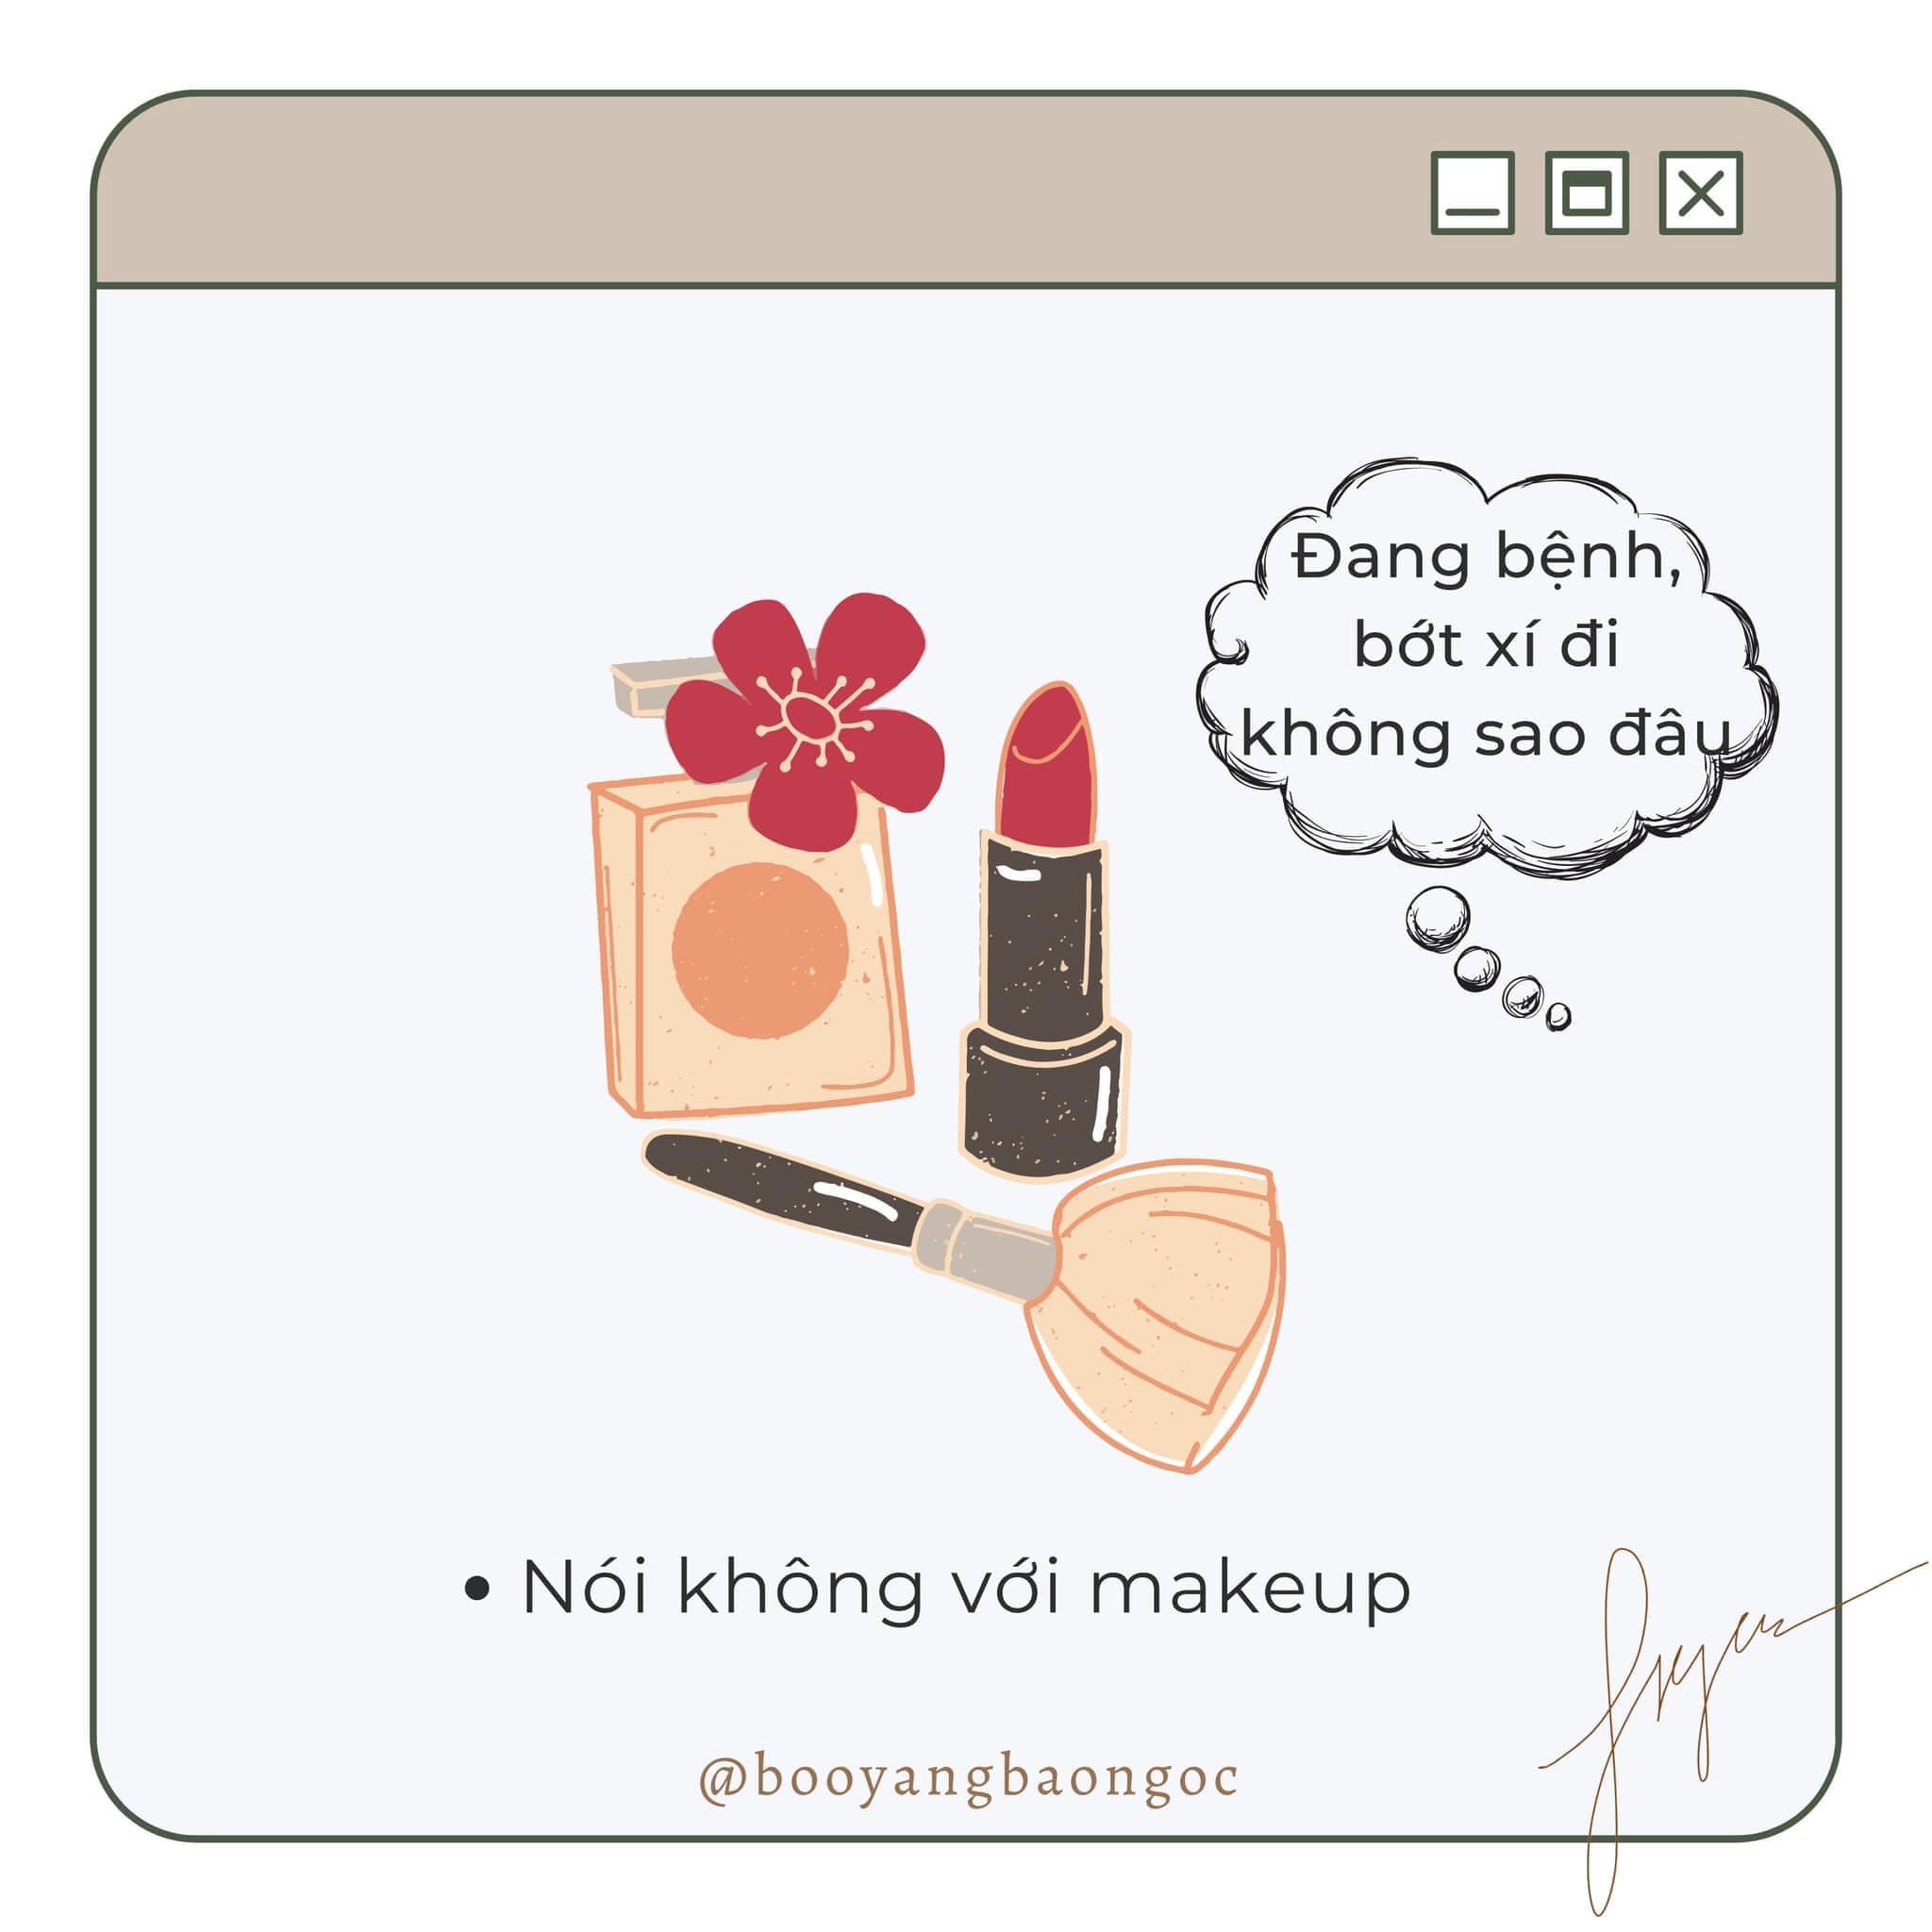 Nói không với makeup